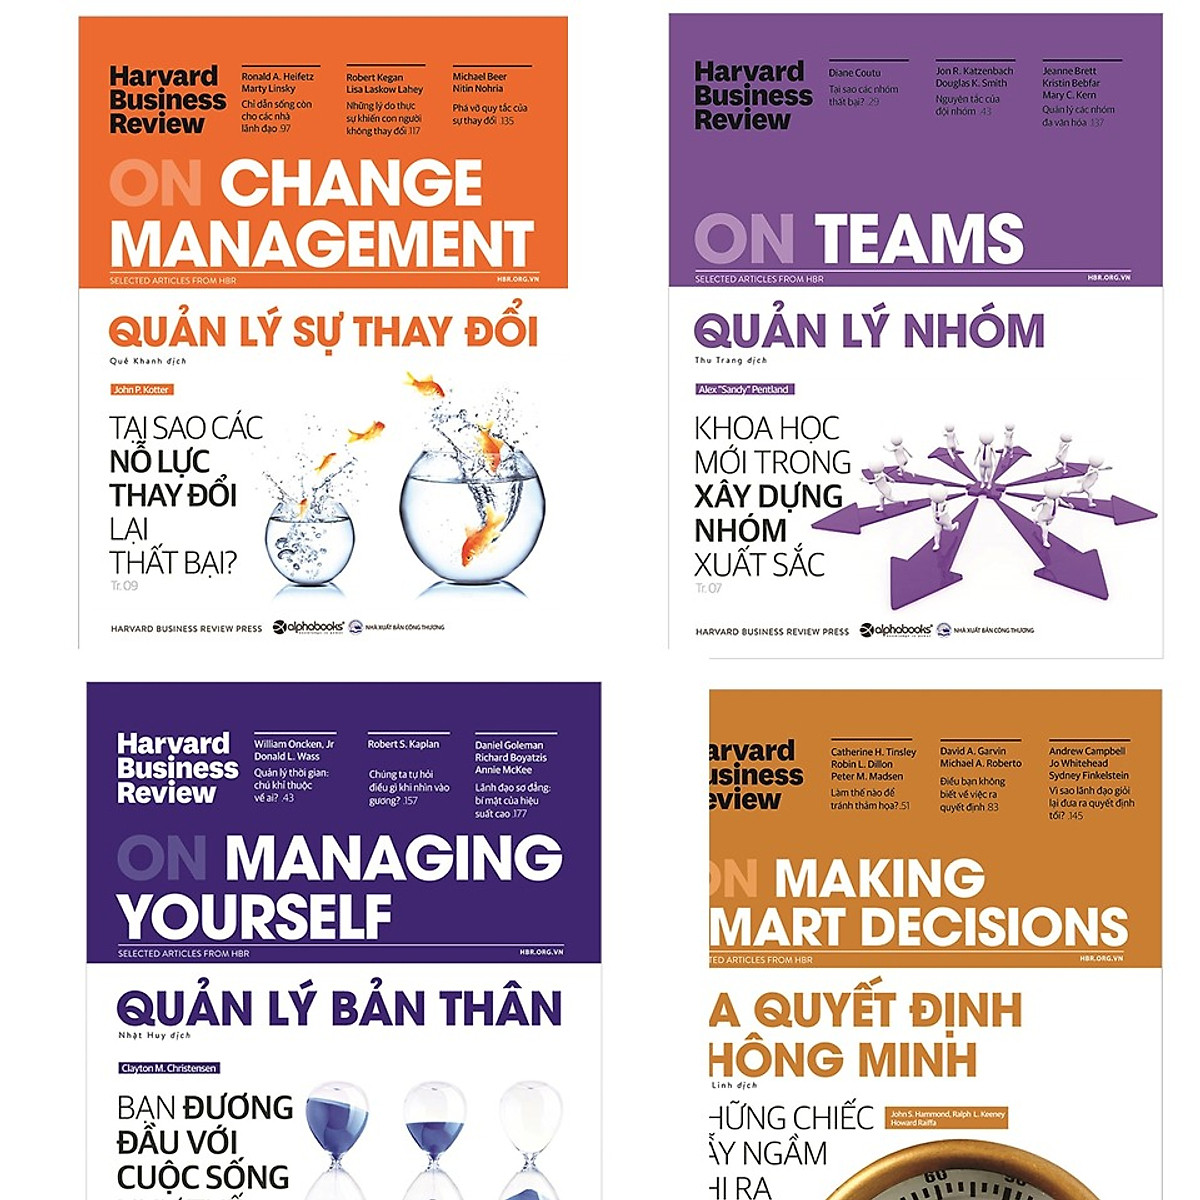 Combo HBR: HBR On Change Manegement - Quản Lý Sự Thay Đổi + HBR On Managing Yourself - Quản Lý Bản Thân + HBR On Teams - Quản Lý Nhóm + HBR On Making Smart Decisions - Ra Quyết Định Thông Minh